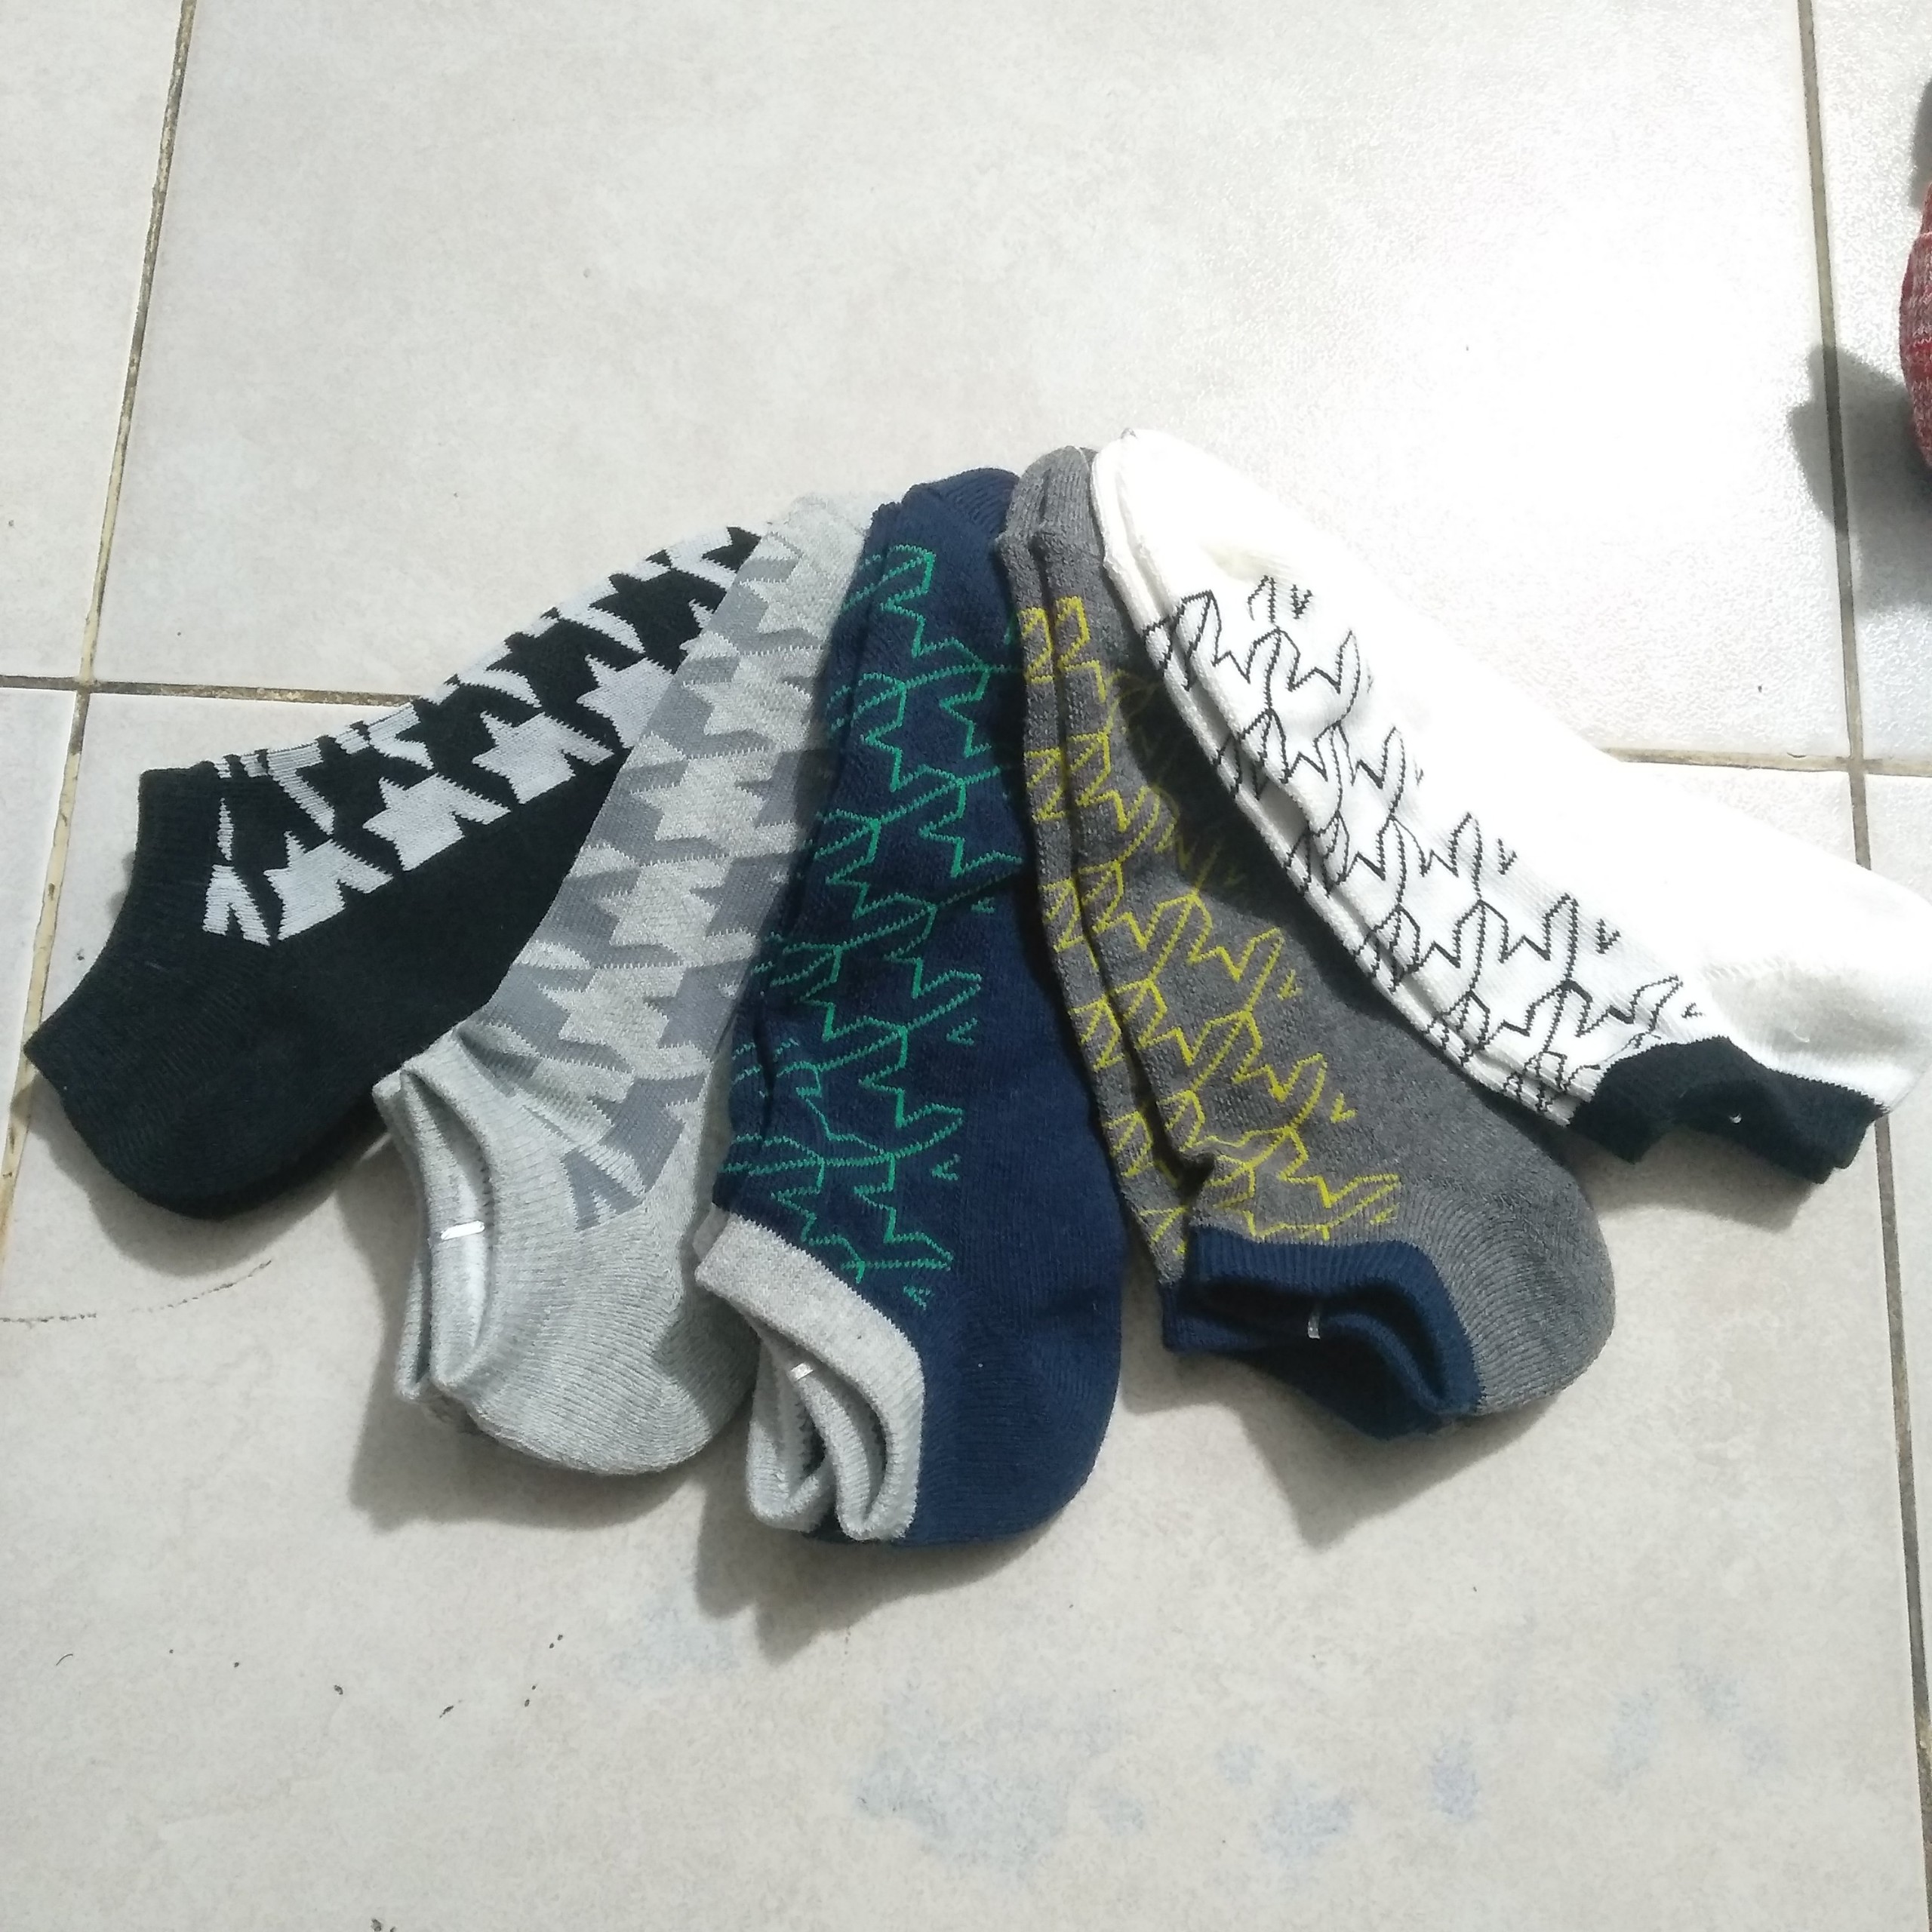 Uniqlo socks set 53